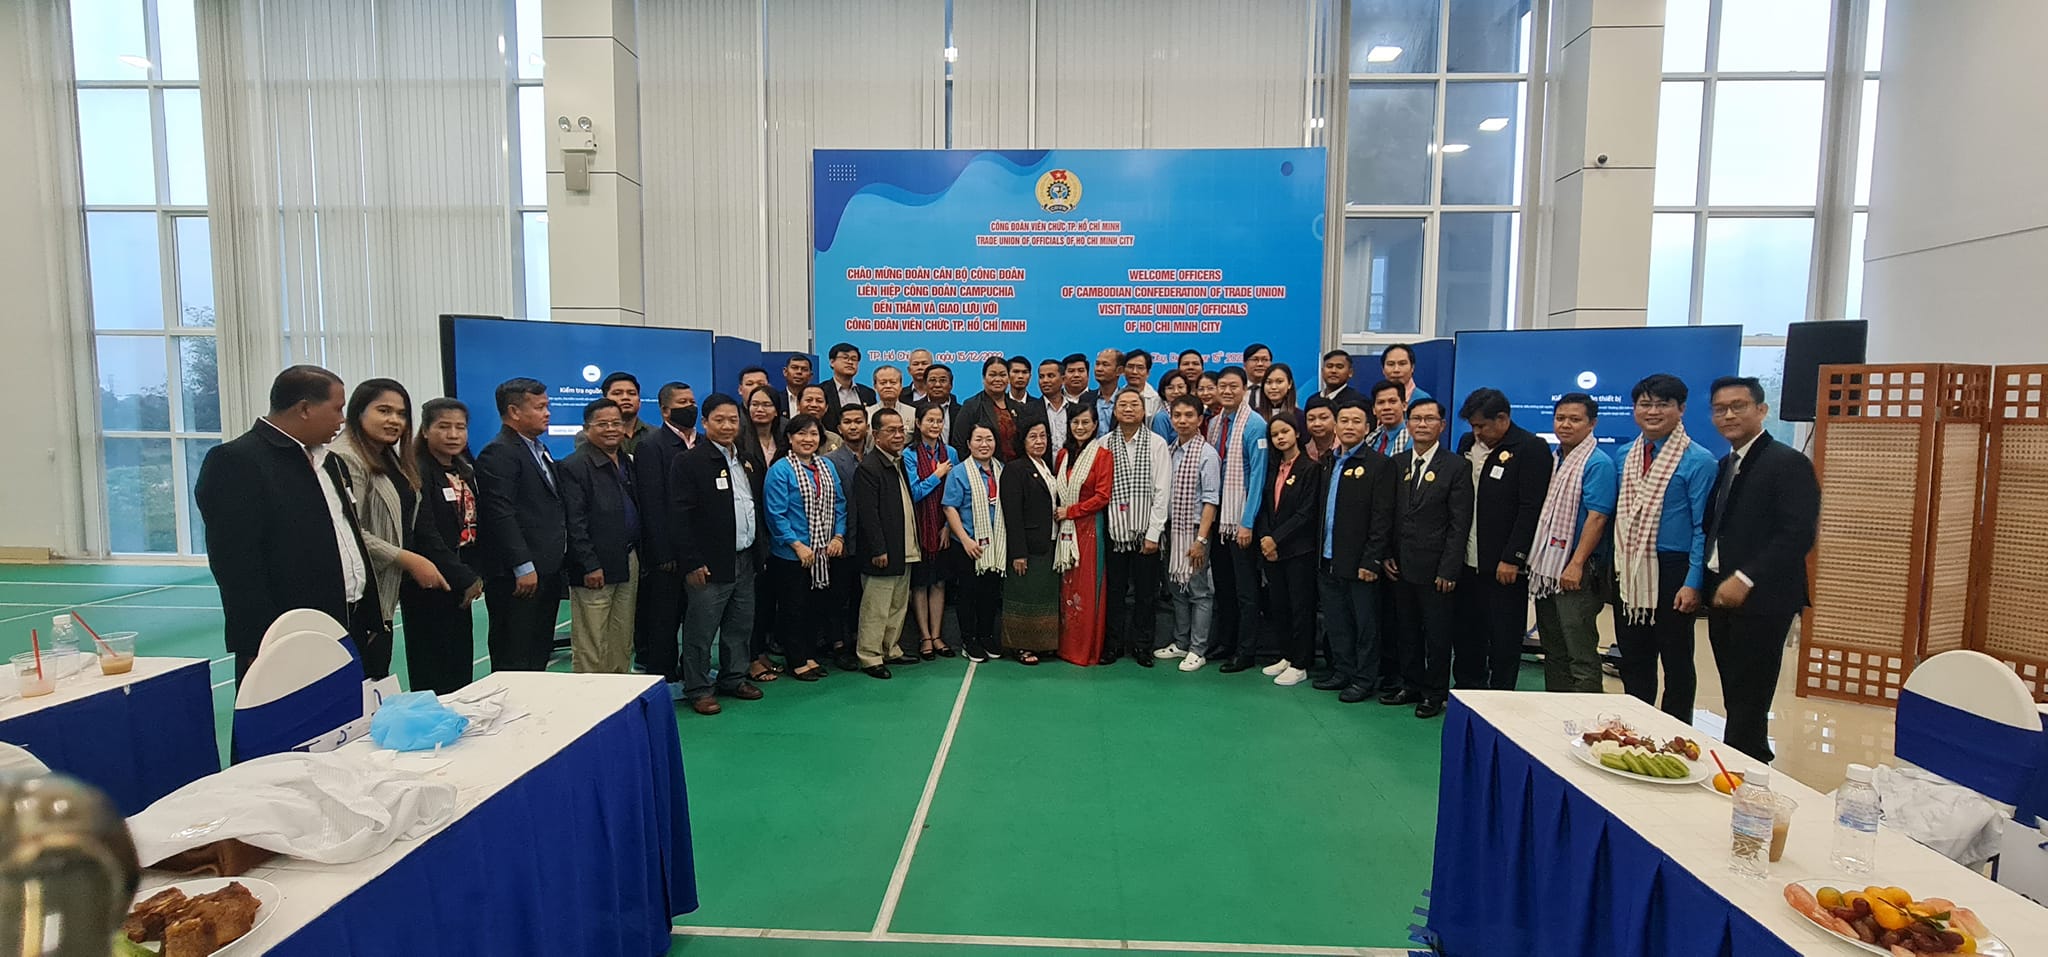 Công đoàn Viên chức TP. Hồ Chí Minh trao đổi kinh nghiệm tổ chức các phong trào thi đua với Công đoàn Campuchia